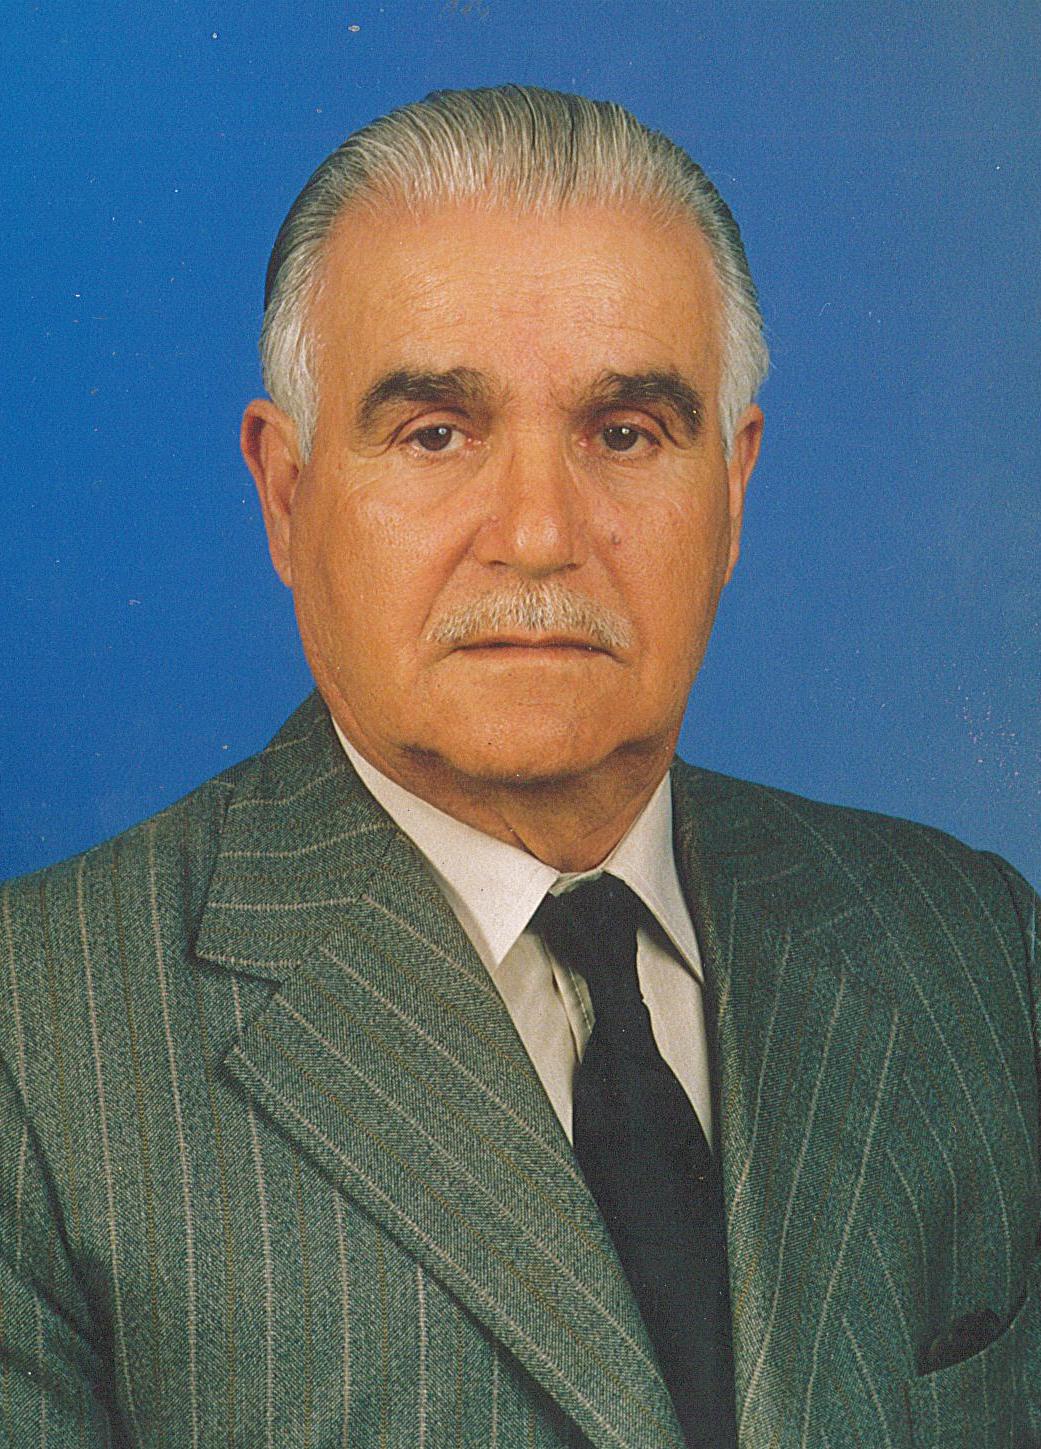 JoaquimGomesDaSilva